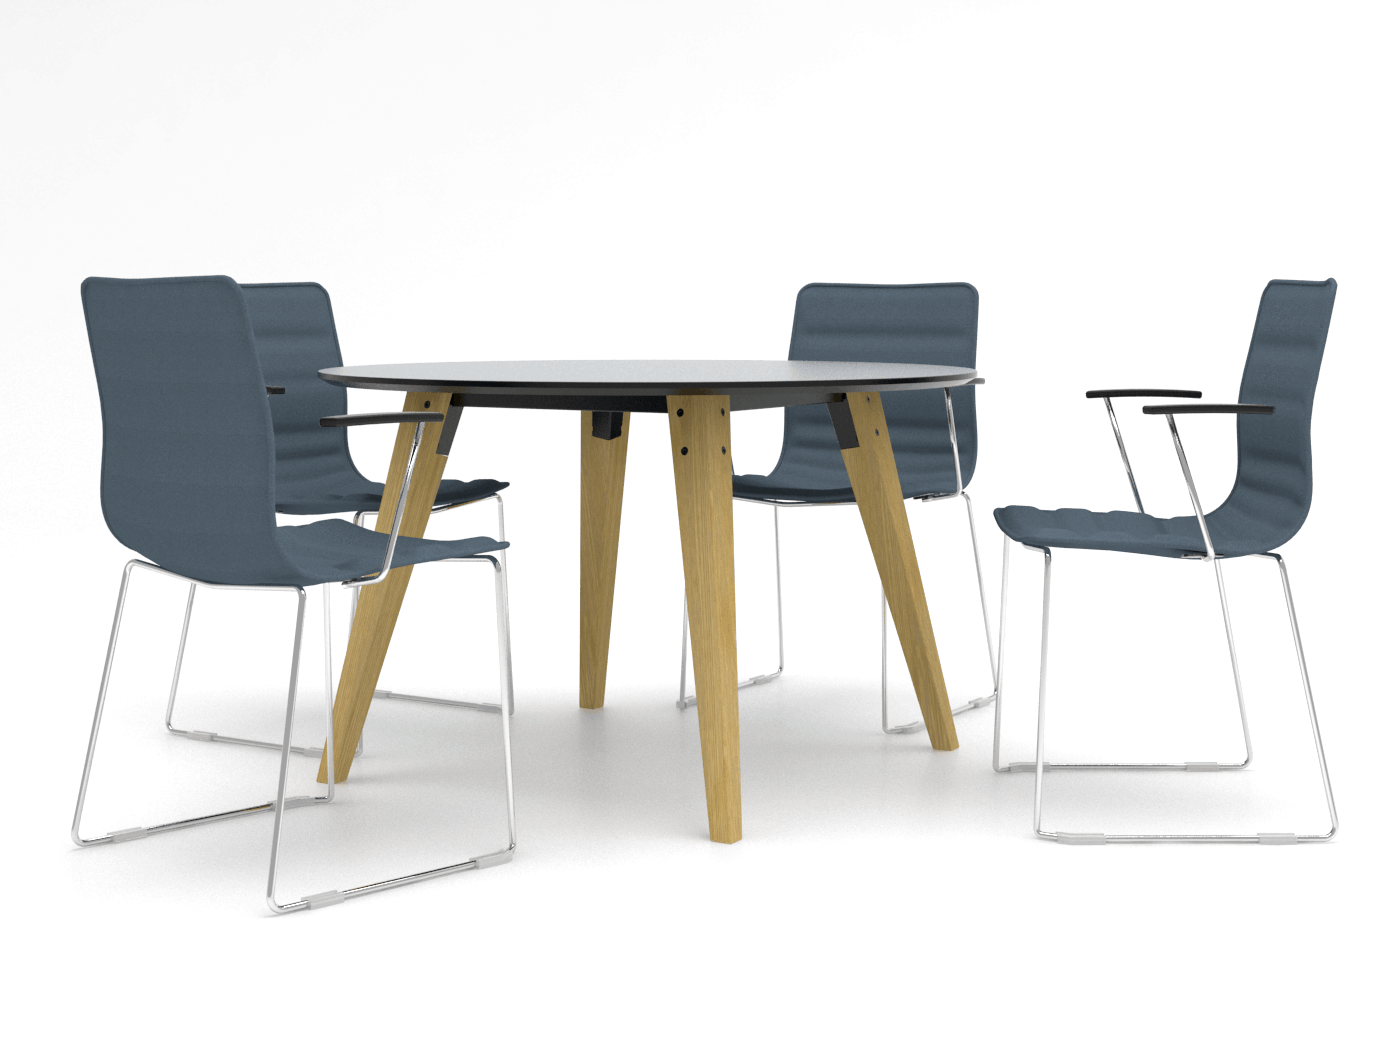 Cube Design - kontormøbler - Spider mødebord - S10 stole - massive træben - egetræsben